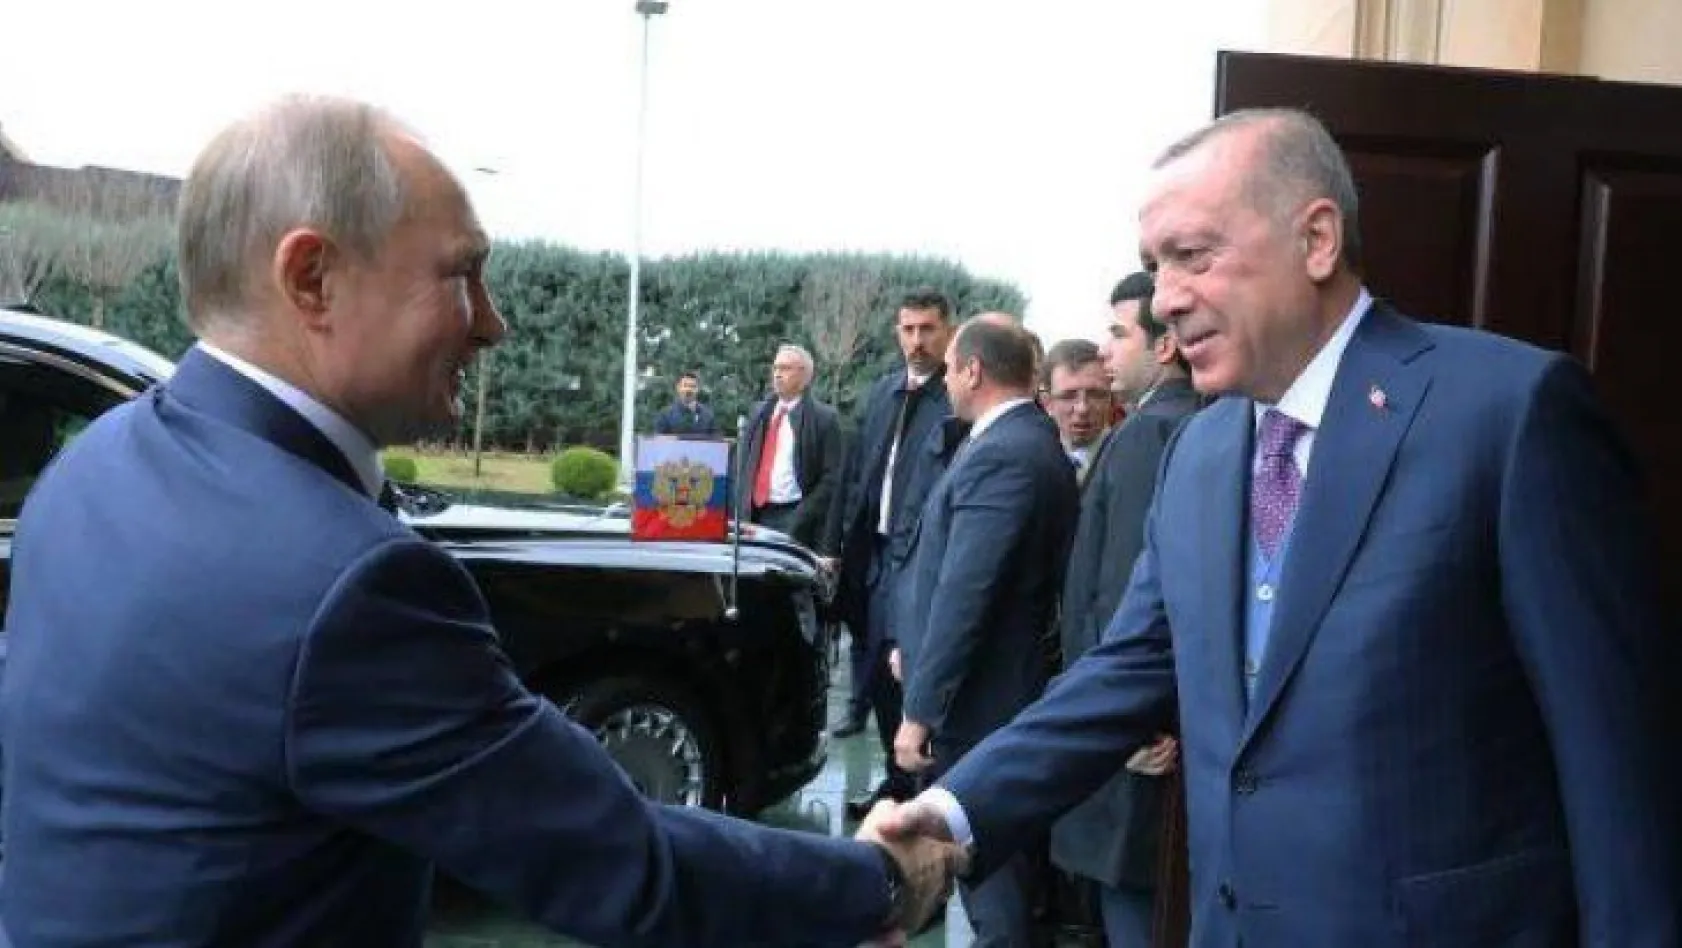 Erdoğan ve Putin görüşmesi başladı!